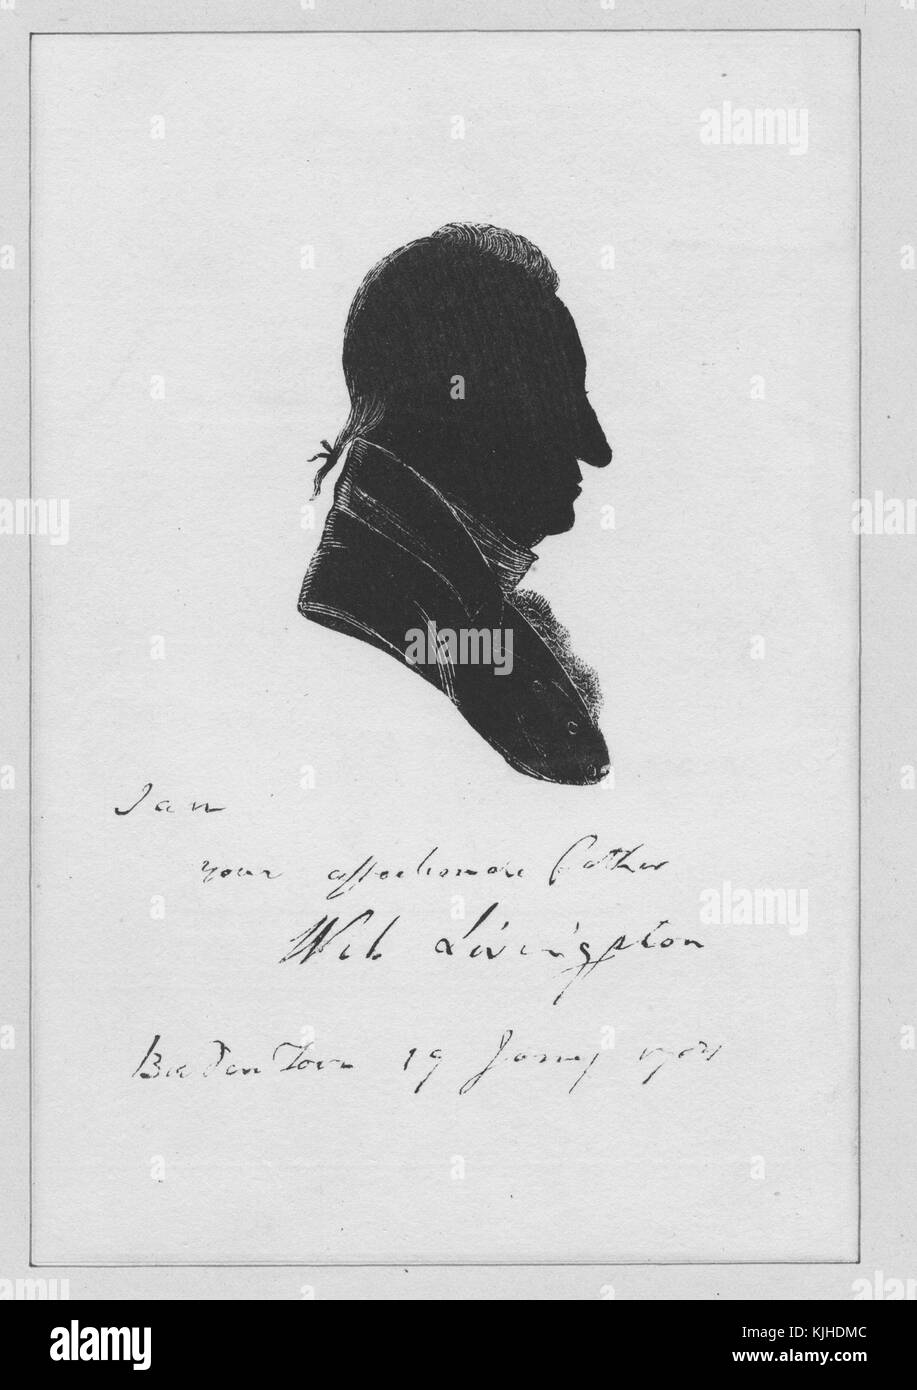 Portrait de profil en silhouette de William Livingston, il a servi comme 1er gouverneur du New Jersey et a occupé ce poste pendant 14 ans, il a été délégué du New Jersey au Congrès continental et a été l'un des signataires de la Constitution des États-Unis, New Jersey, 1830. De la bibliothèque publique de New York. Banque D'Images